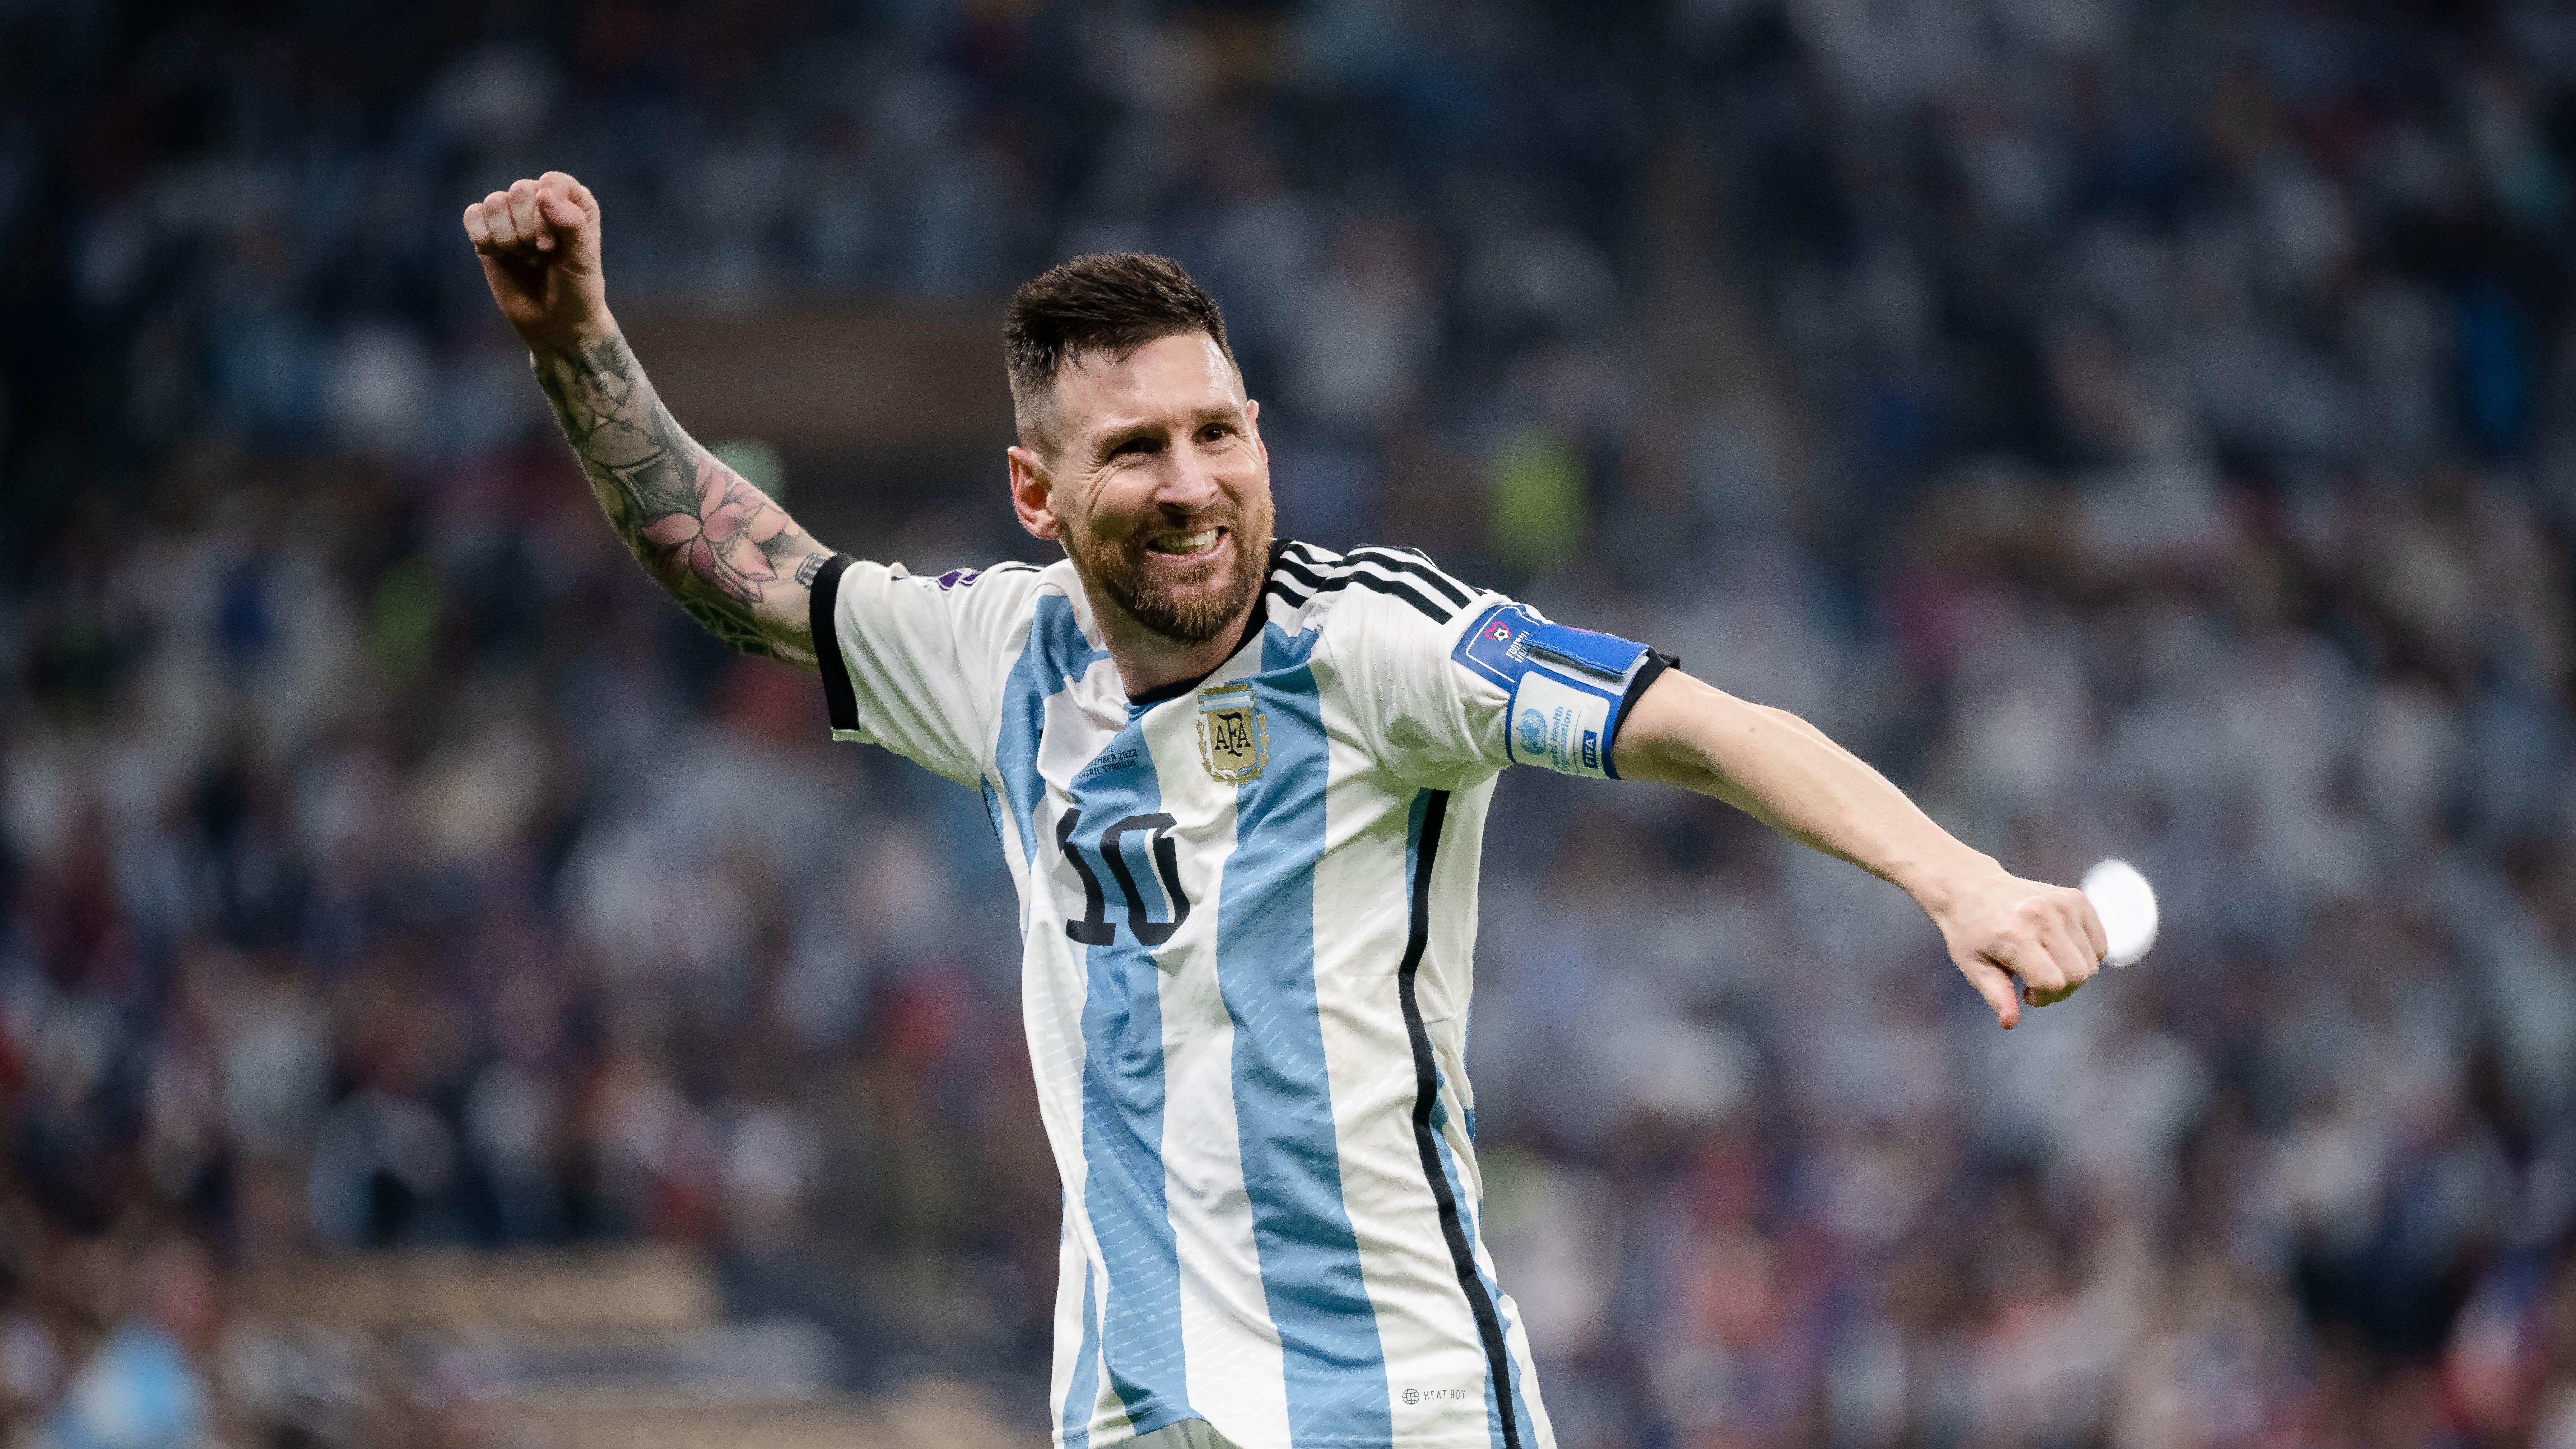 KÉP: kiderült, hogy Messi nem egyedül töltötte a győzelem éjszakáját – frissítve!